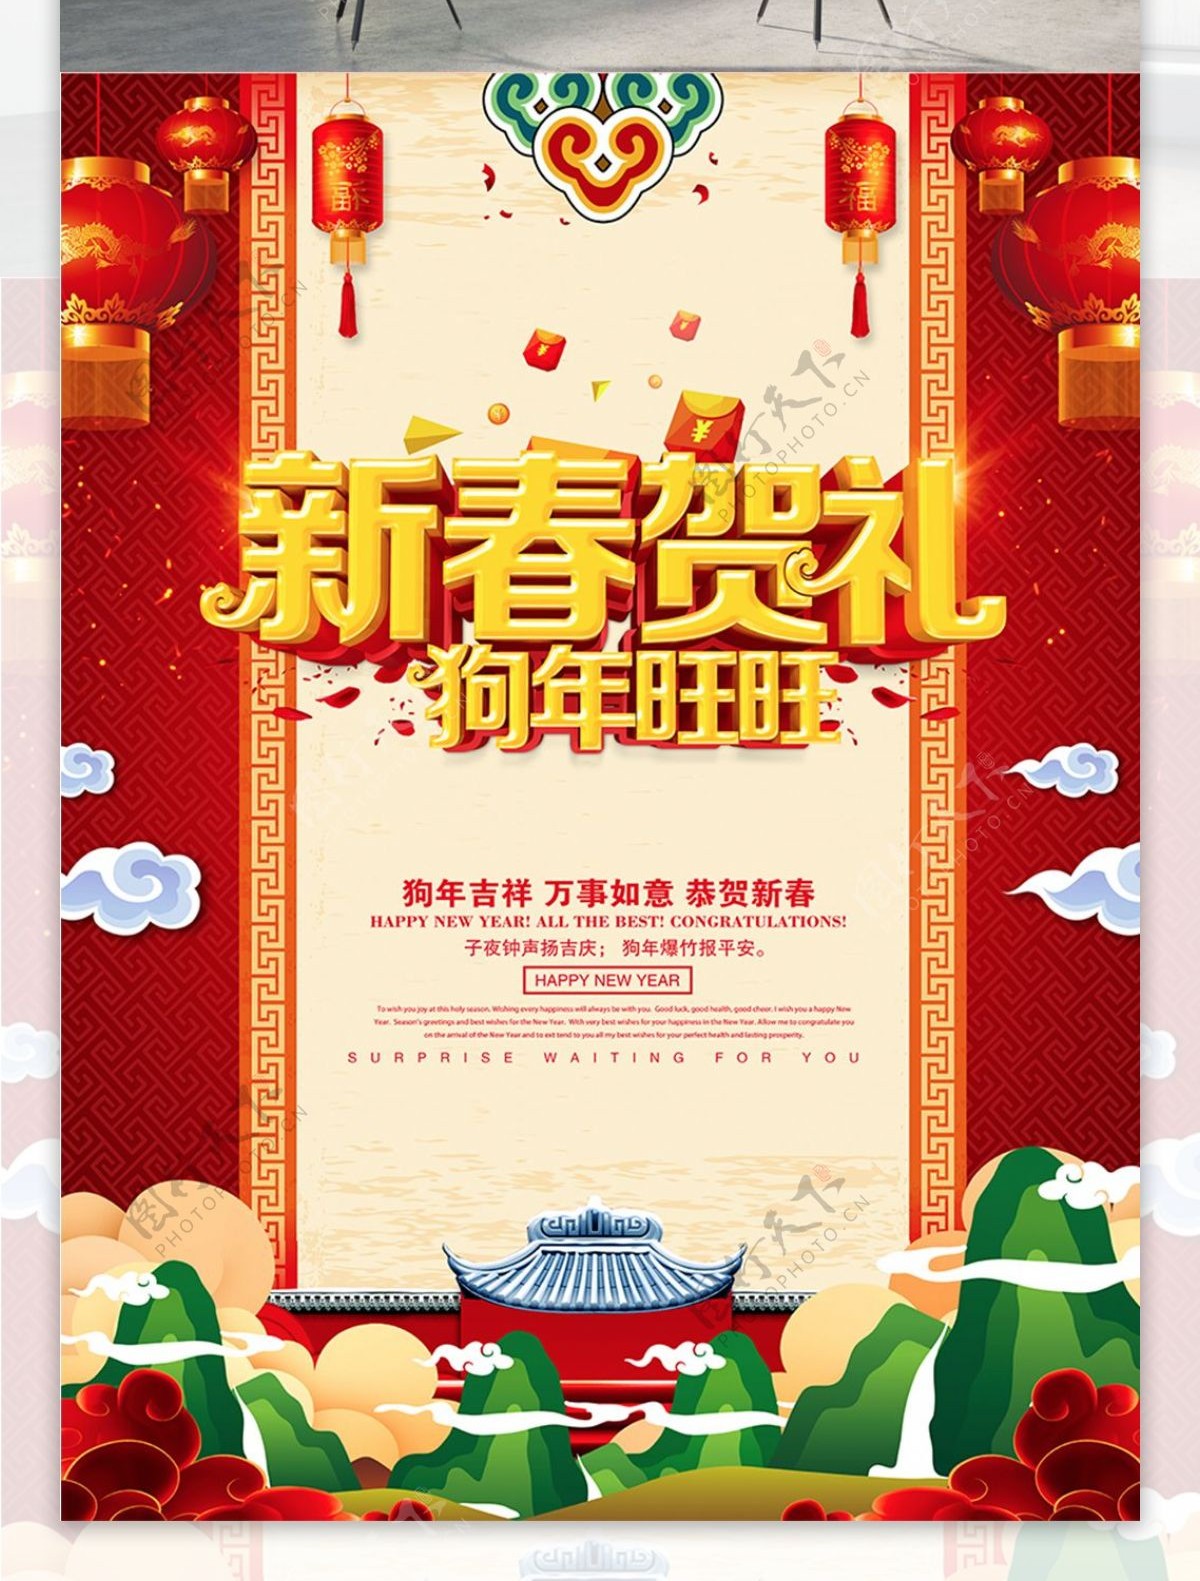 新春贺礼春节促销海报设计PSD模版